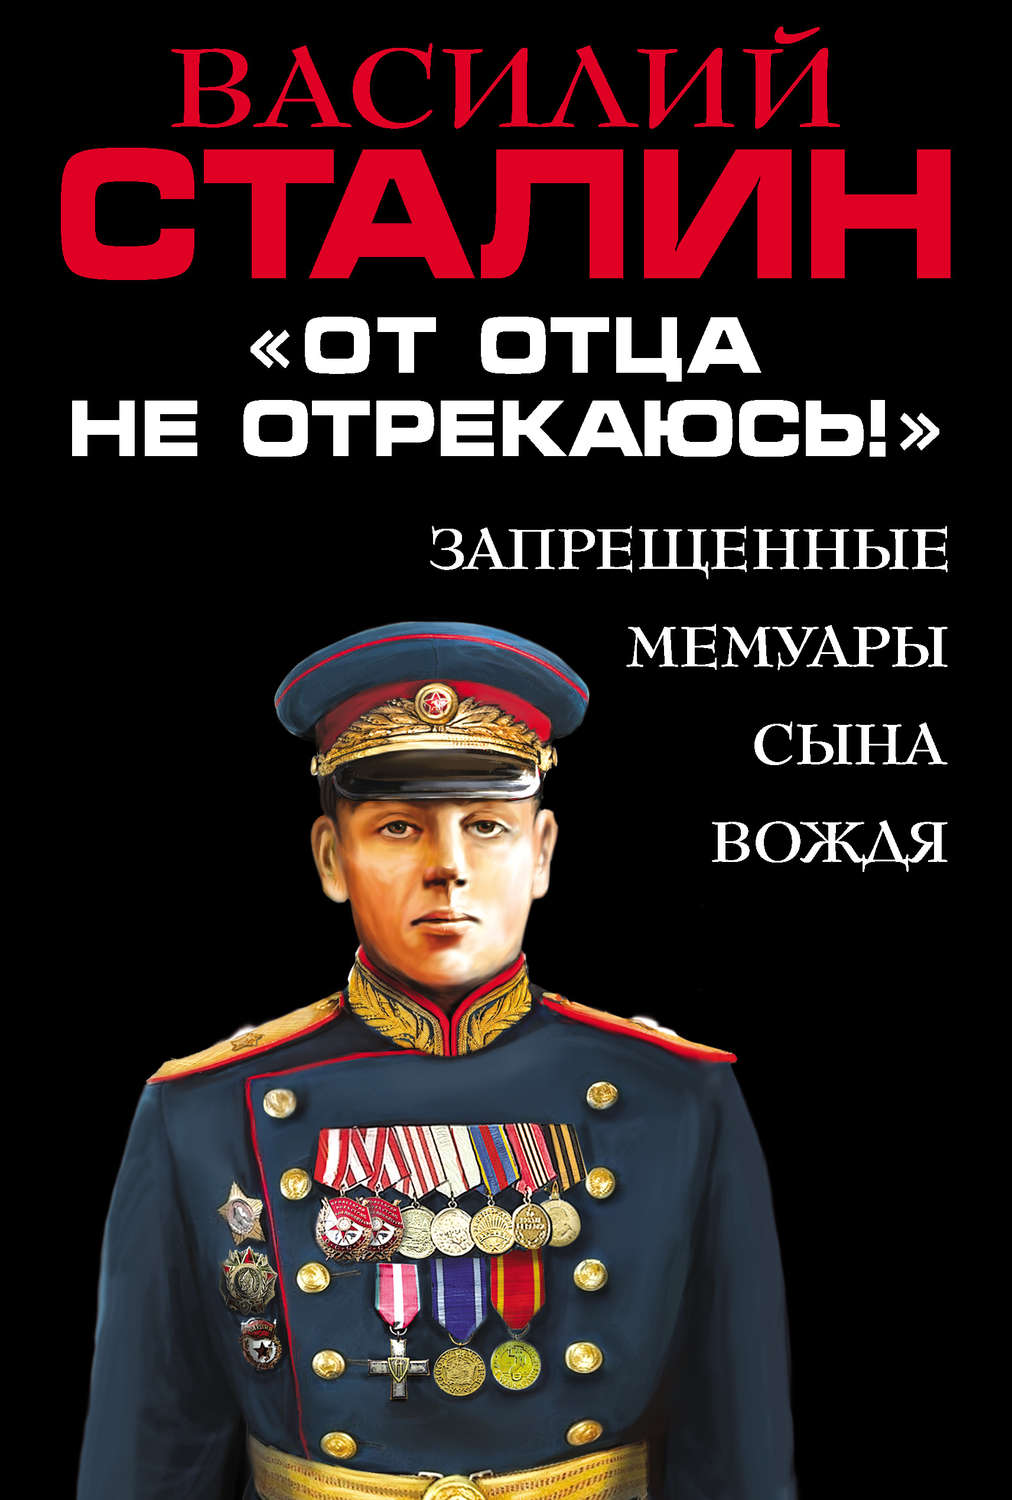 день рождения василия сталина